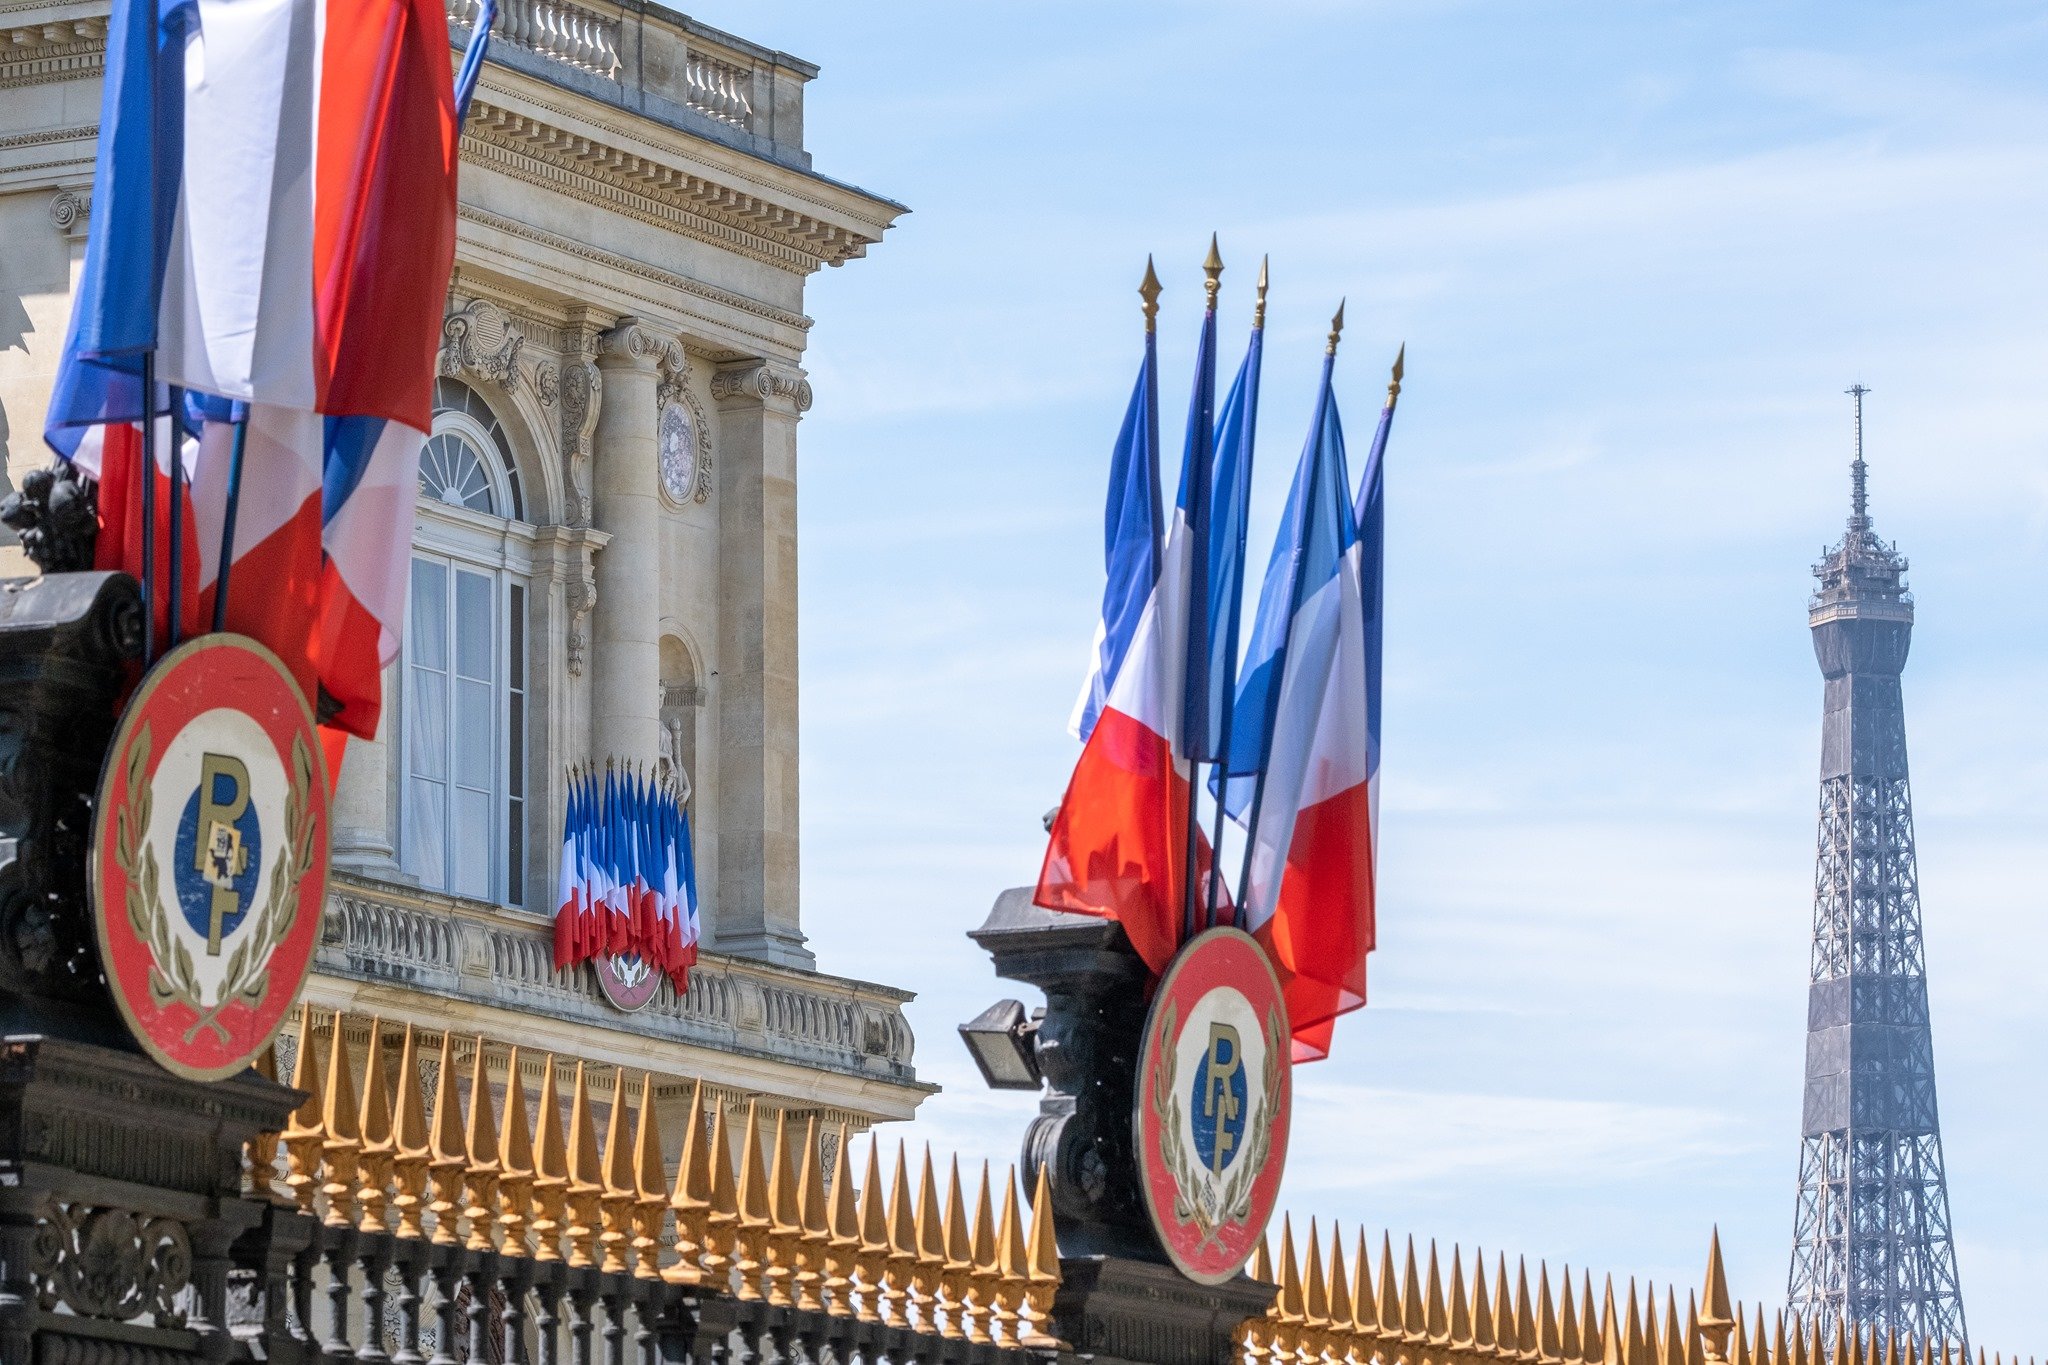 Ֆրանսիայի ԱԳՆ-ն հայտարարություն է տարածել Լաչինի միջանցքի վերաբերյալ Հաագայի դատարանի որոշման մասին